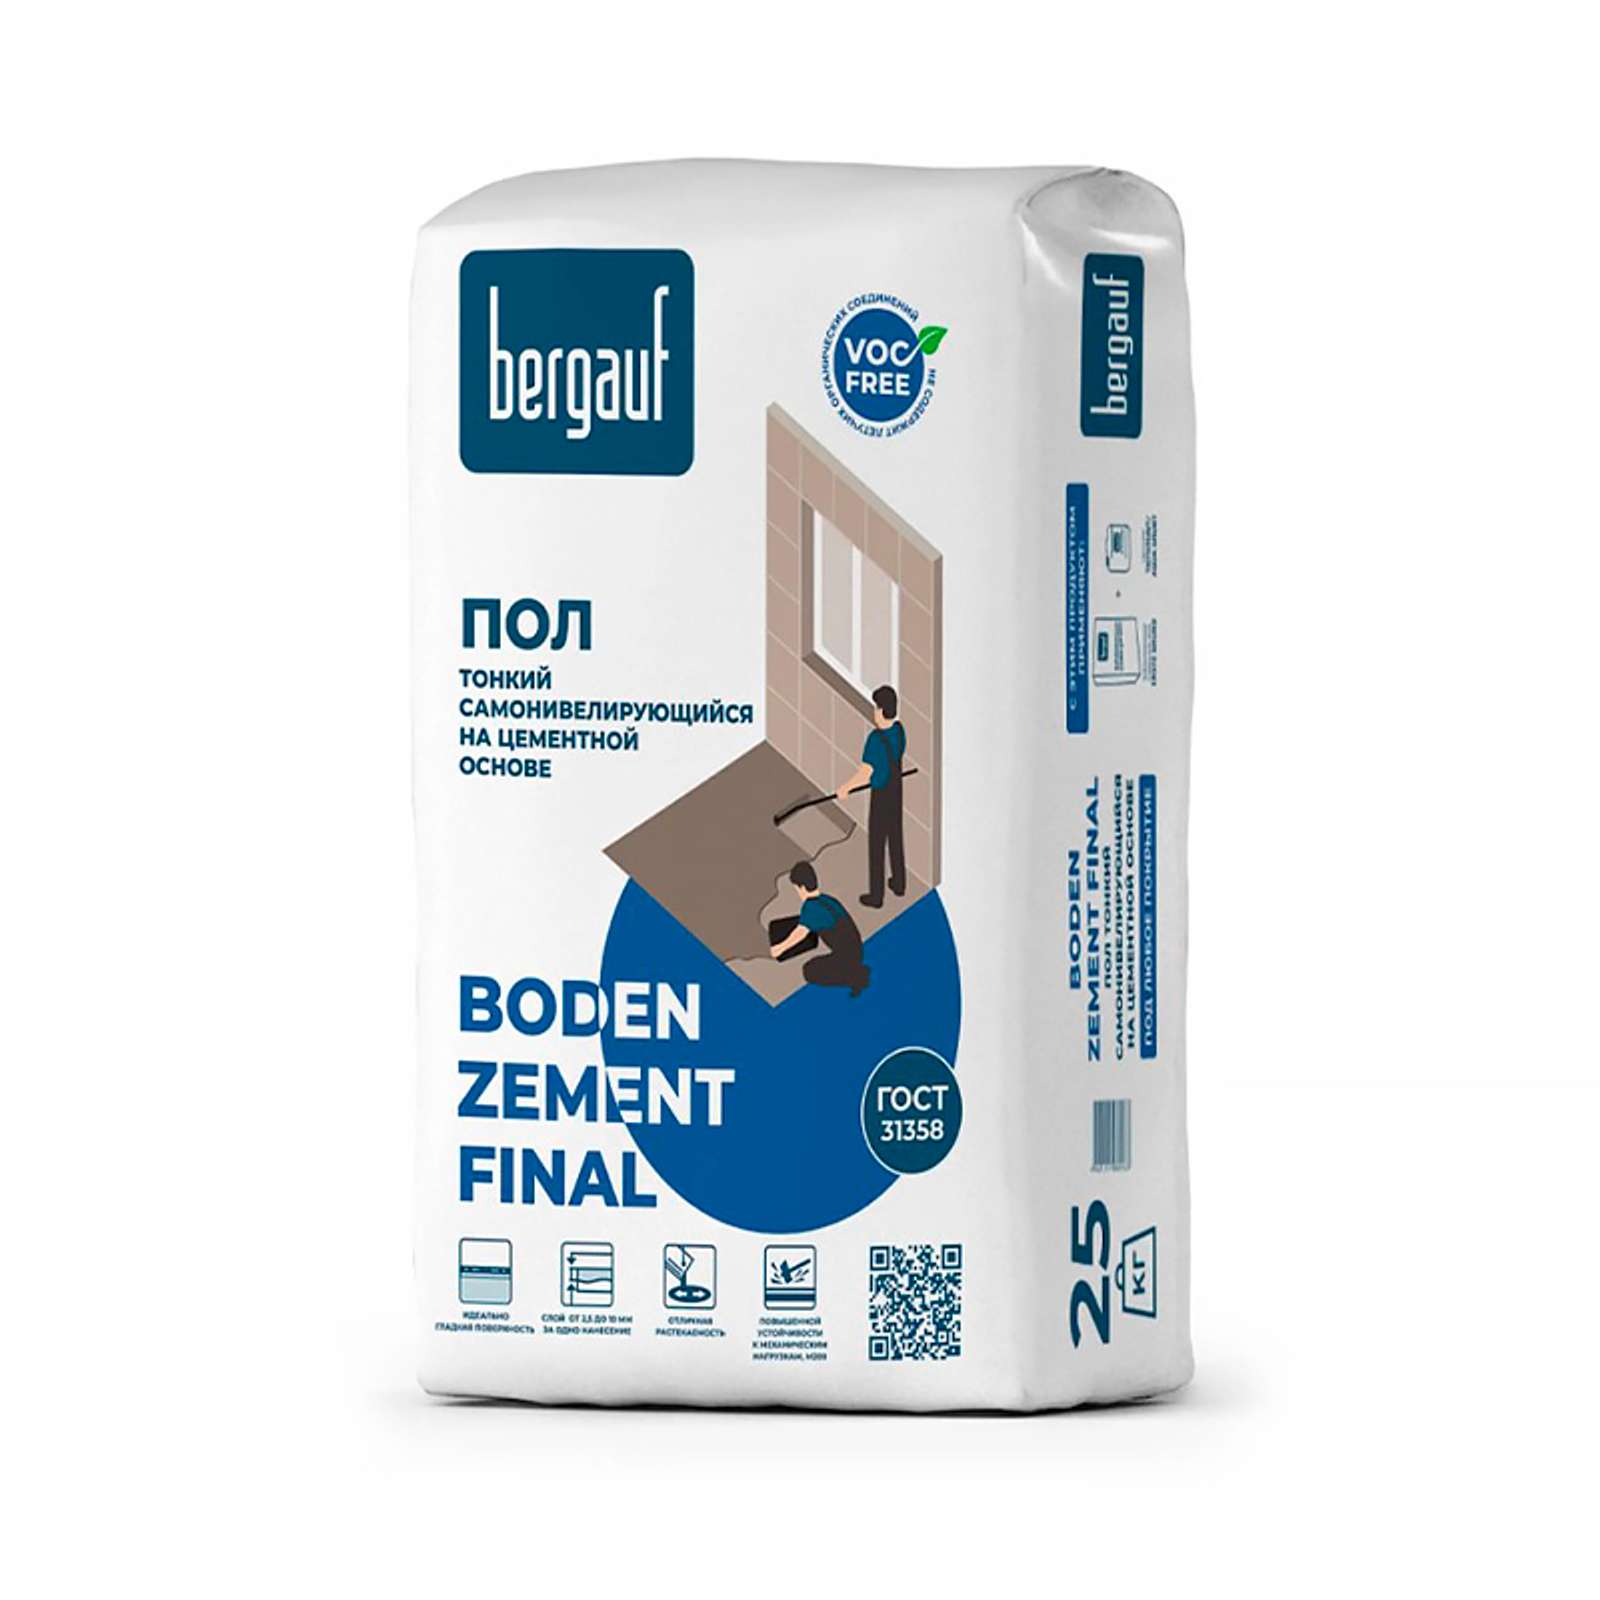 Купить Наливной пол Bergauf Boden Zement Final, 25 кг в Мегионе, цены .